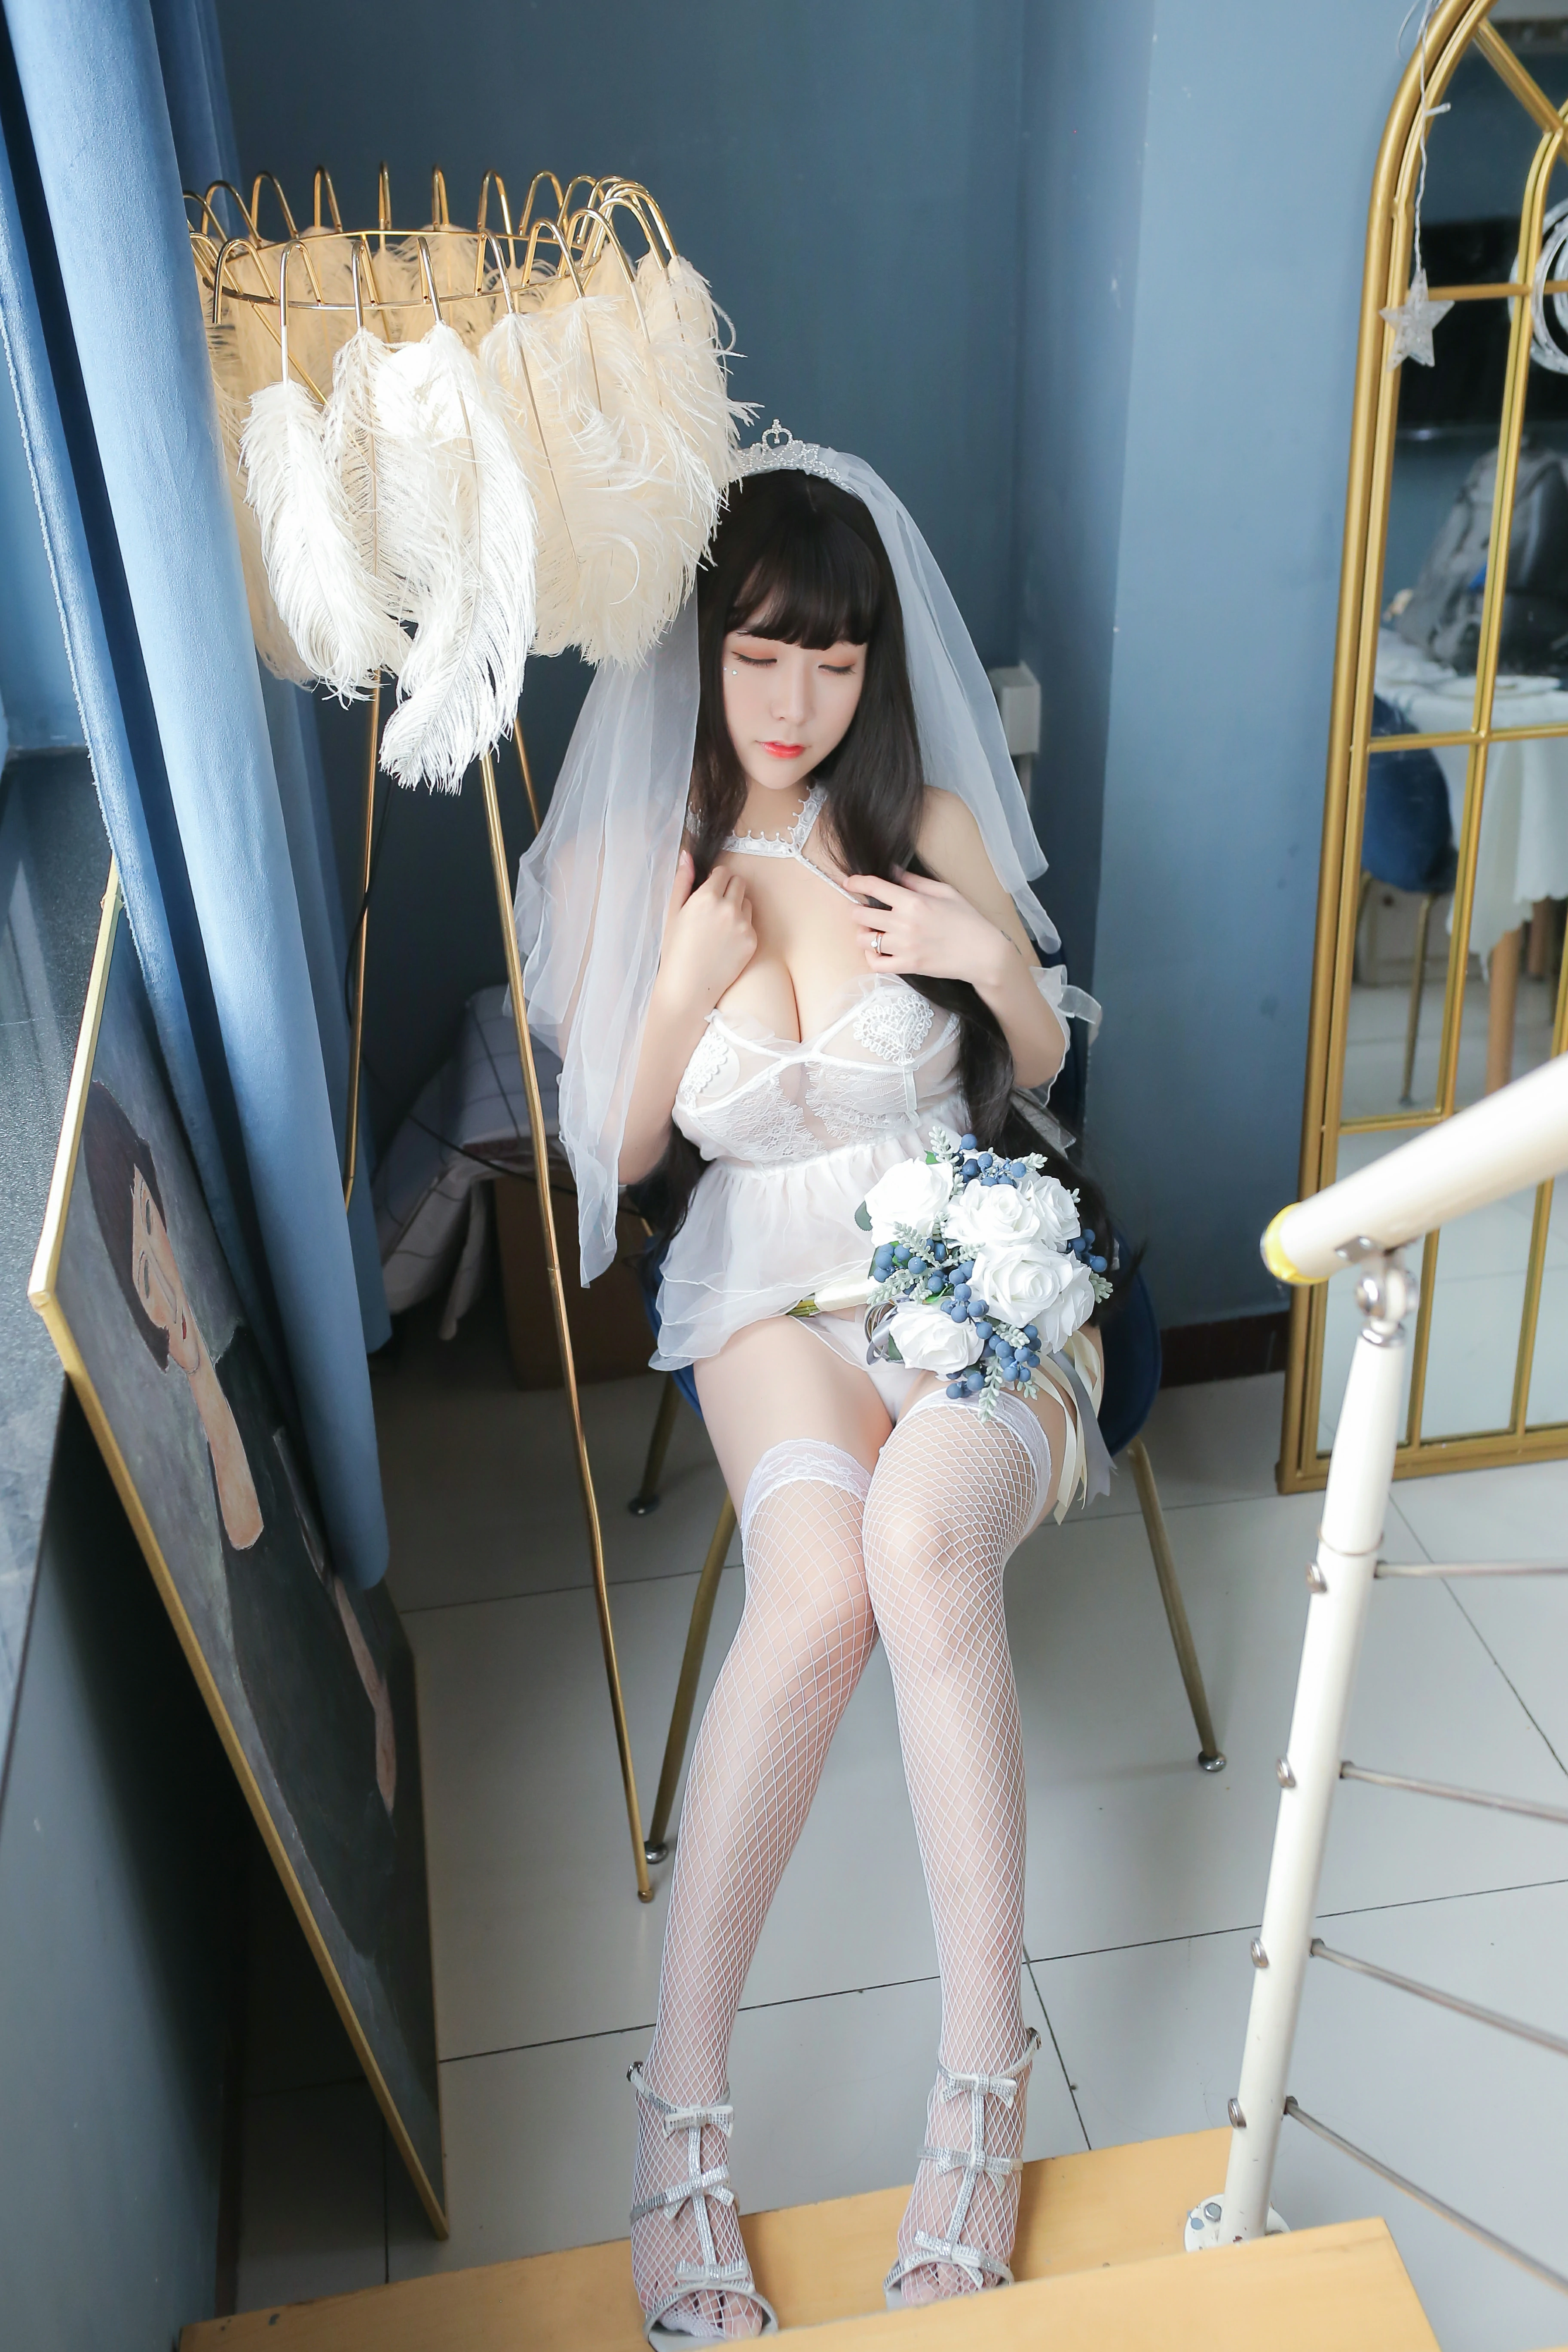 清纯丰满少女 猫九酱Sakura 白色透视情趣婚纱加白色渔网袜性感私房写真集,